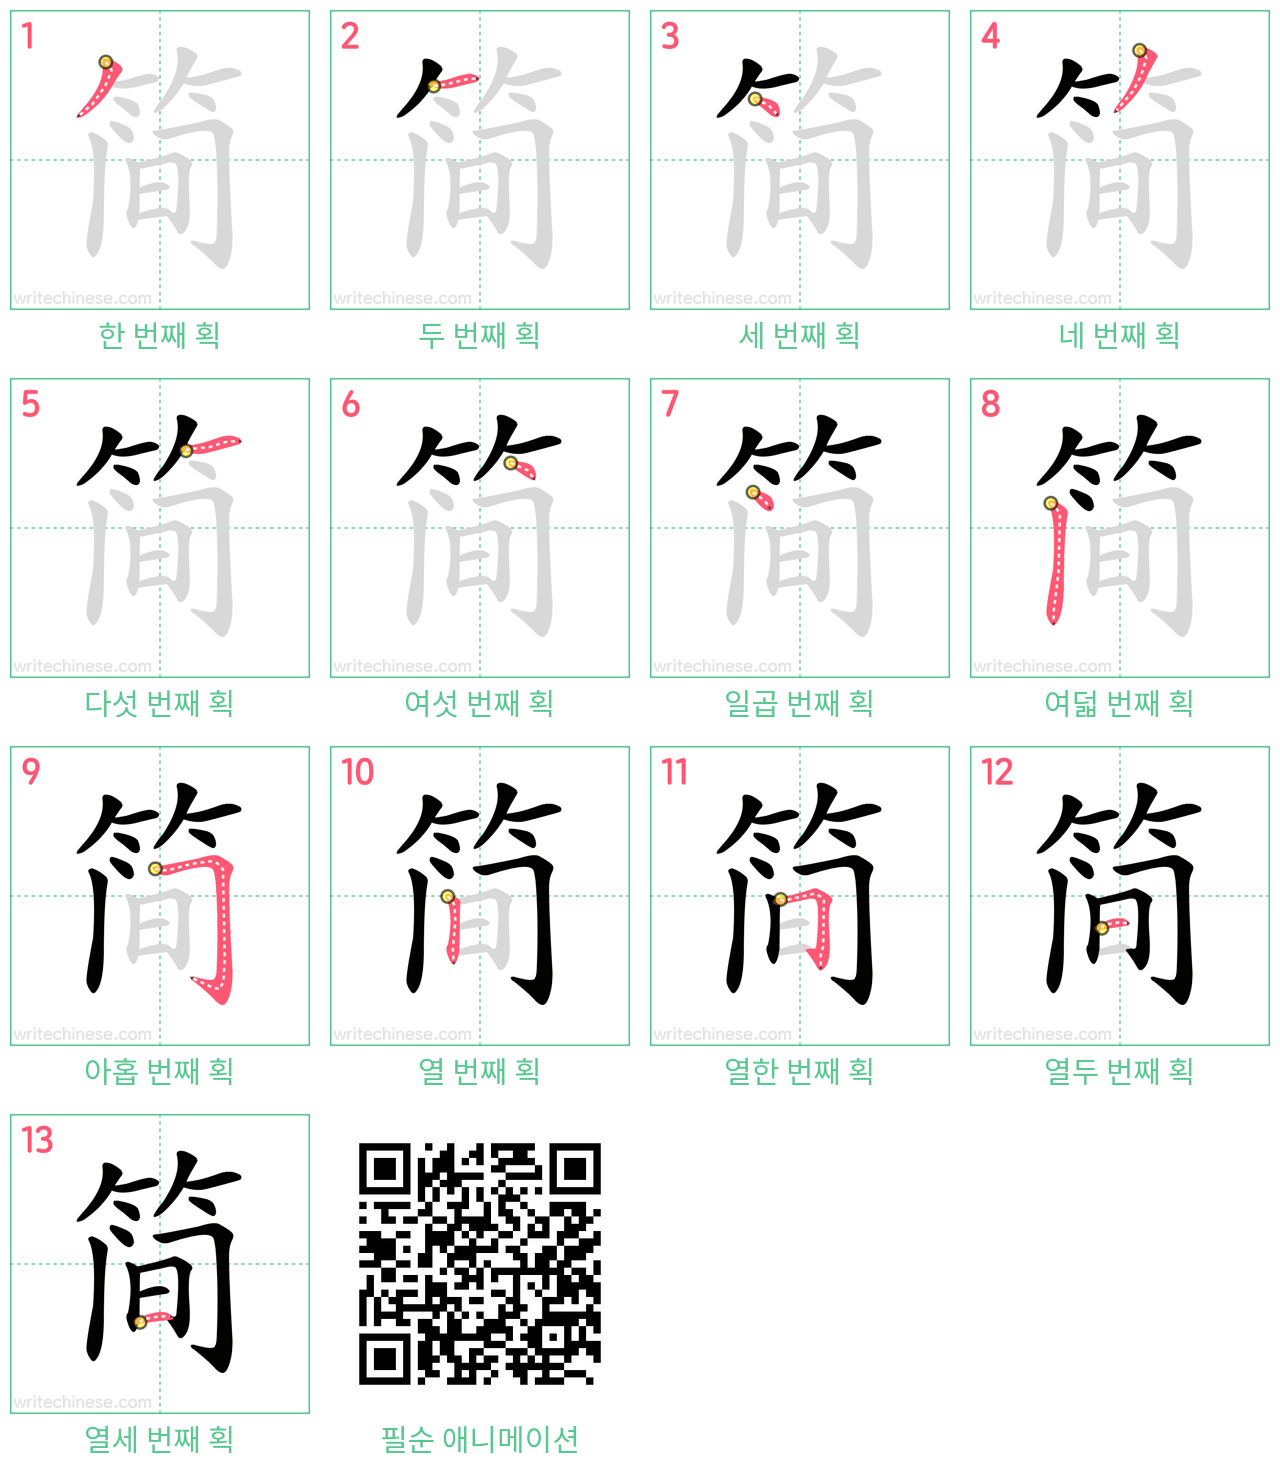 简 step-by-step stroke order diagrams